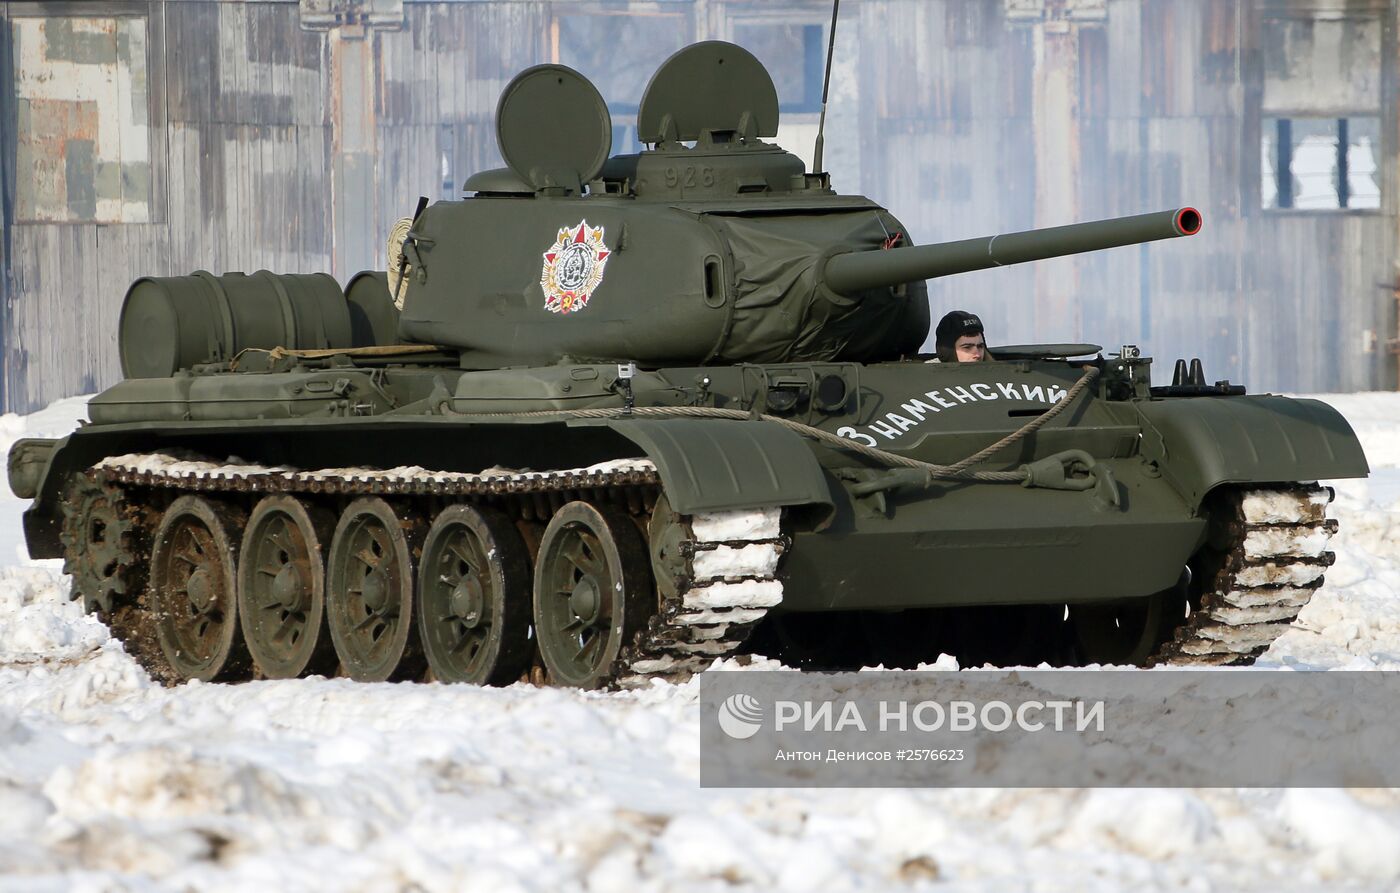 Презентация отреставрированного танка Т-44